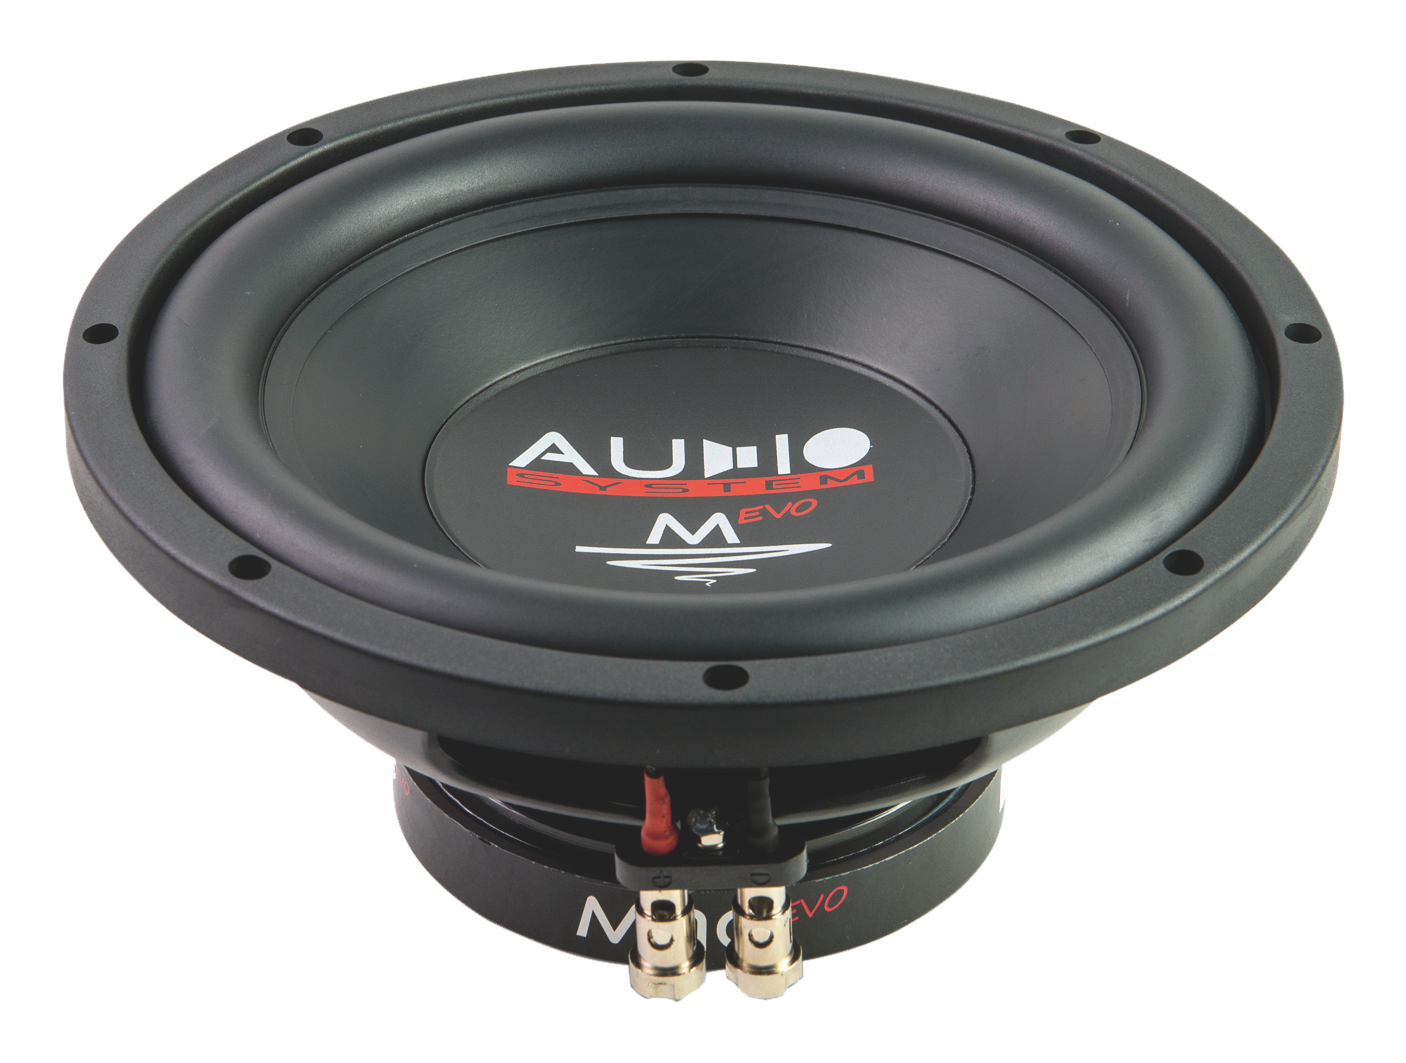 Audio System SUBFRAME M10 ACTIVE EVO Bassreflexgehäuse mit M10 EVO + M-350.1 D